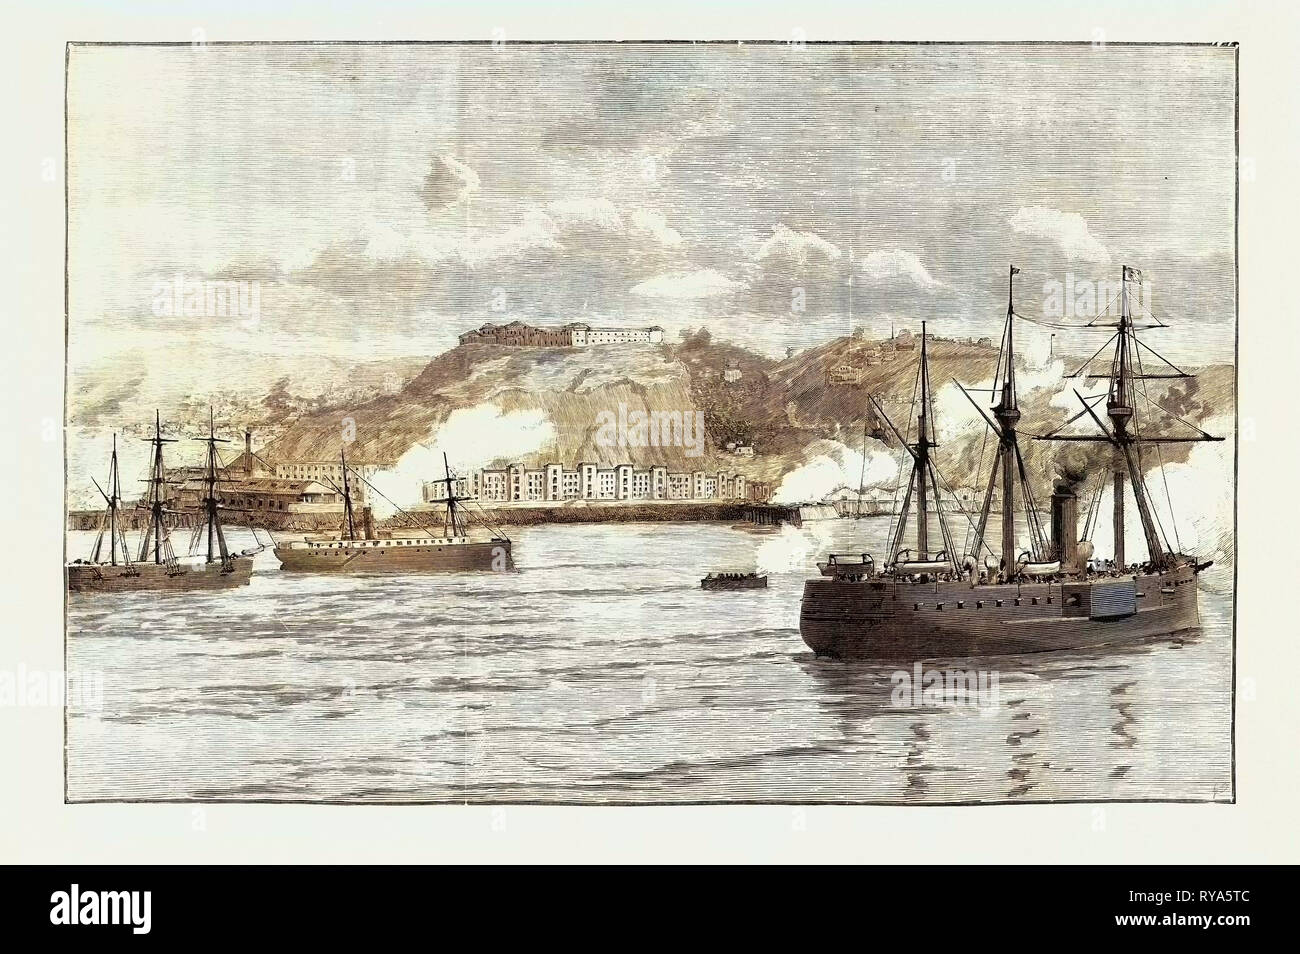 La guerra civile in Cile ostilità a Valparaiso: scambio di colpi tra Shore batterie e Chilian corazzata Blanco Encalada 1891 Foto Stock